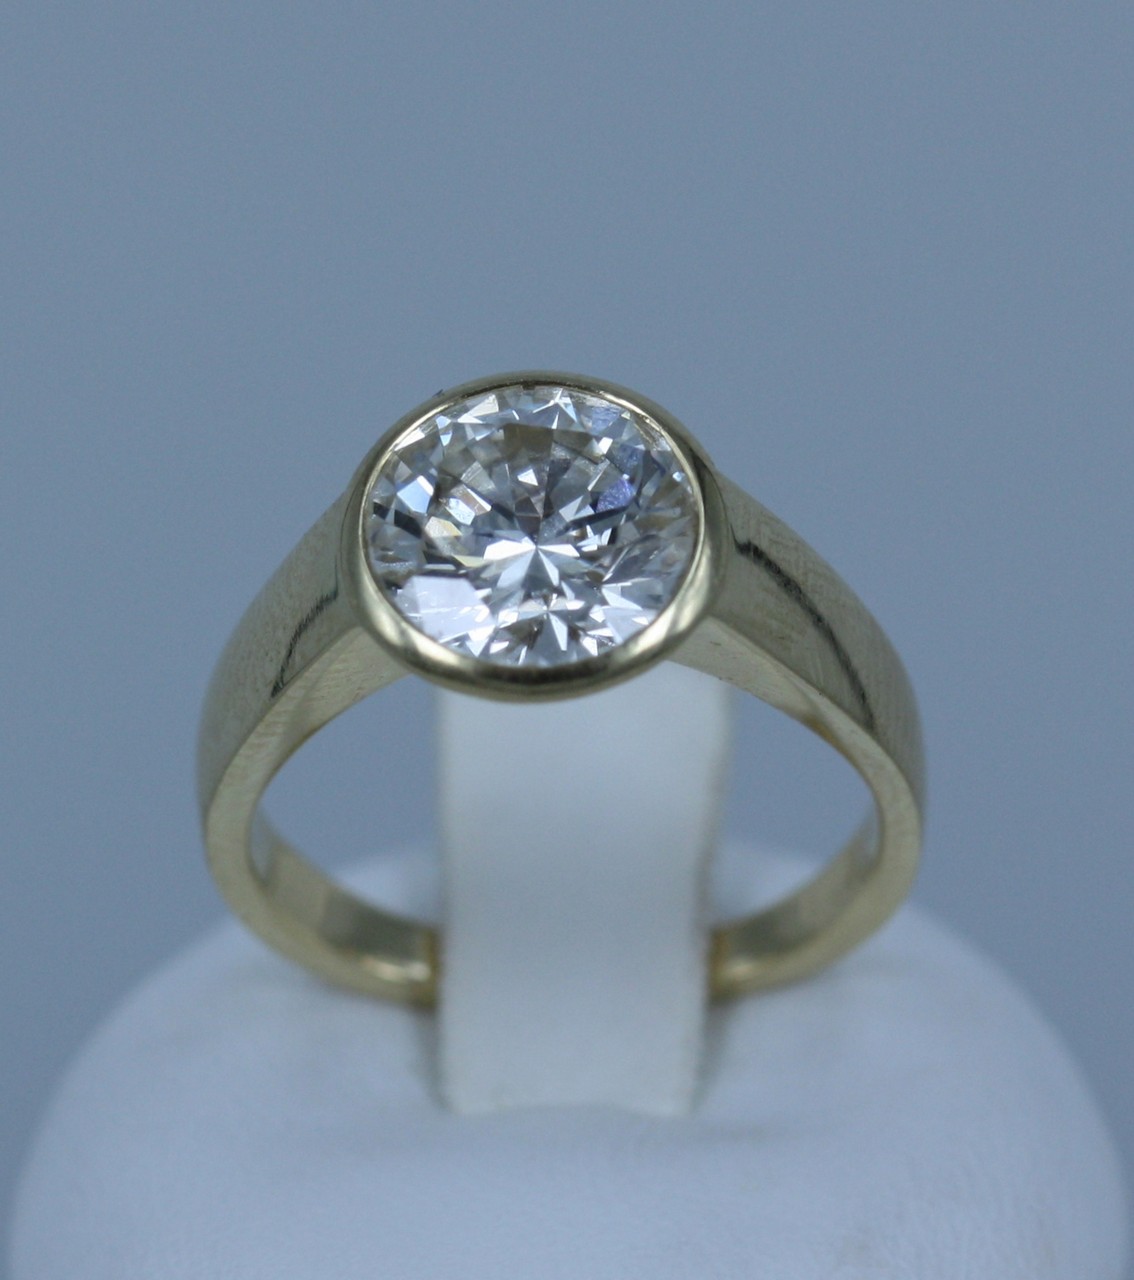 Anello in oro giallo 18 kt. con diamante solitario taglio brillante rotondo, ct. 2,30-2,40 ca., - Image 3 of 4